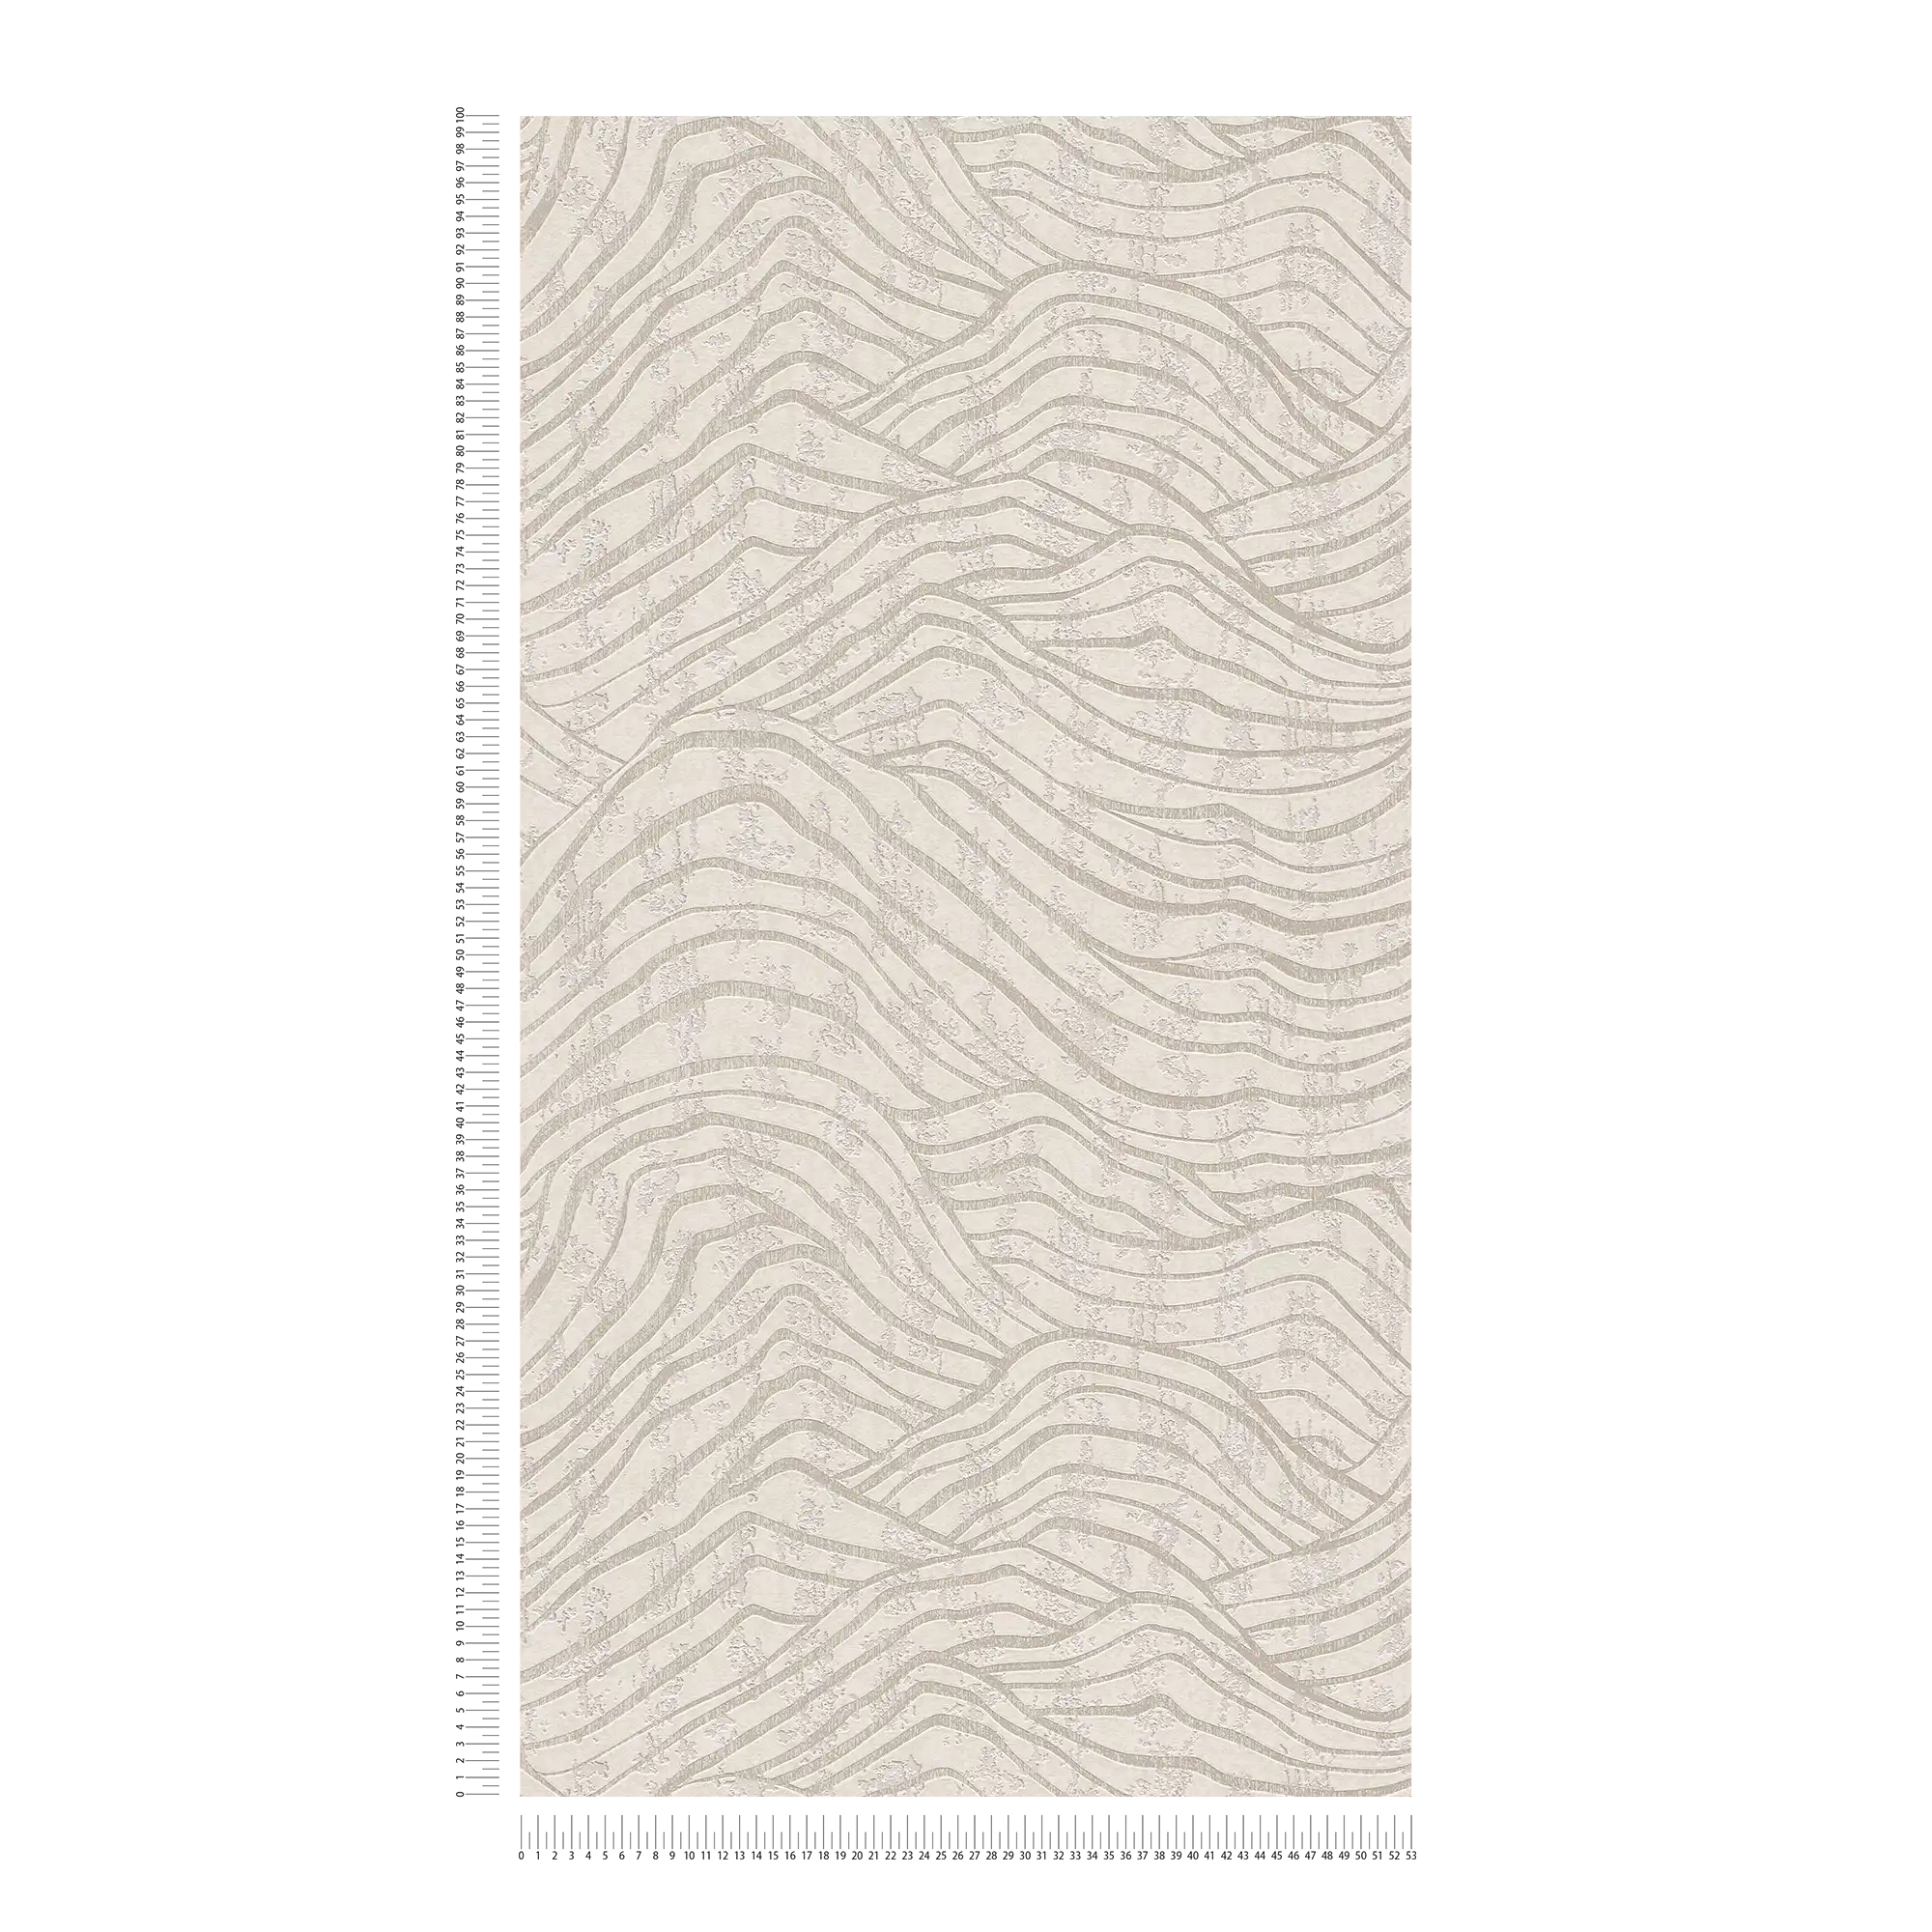             Abstract behang met heuvelpatroon in zachte kleuren - wit, zilver
        